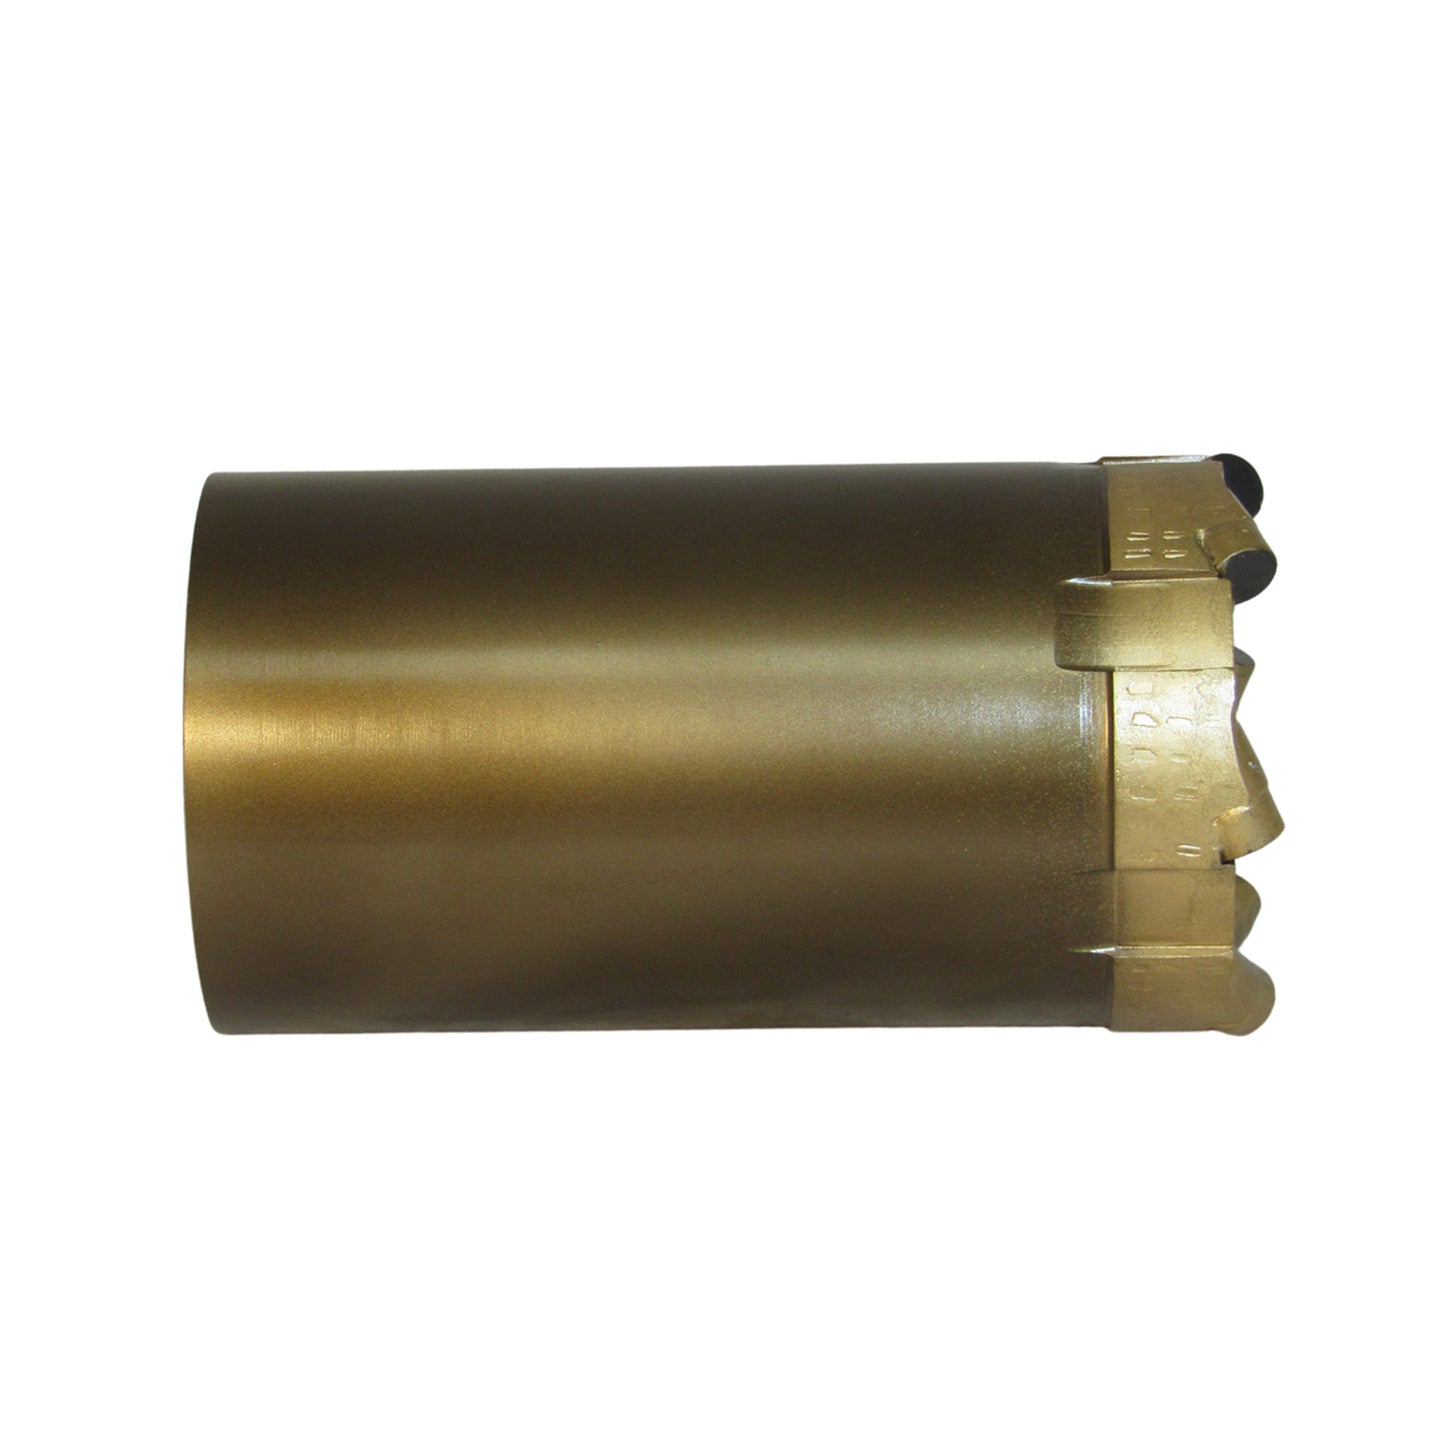 Phoenix T2-101 Coring Drill Bit - PCD - Standard